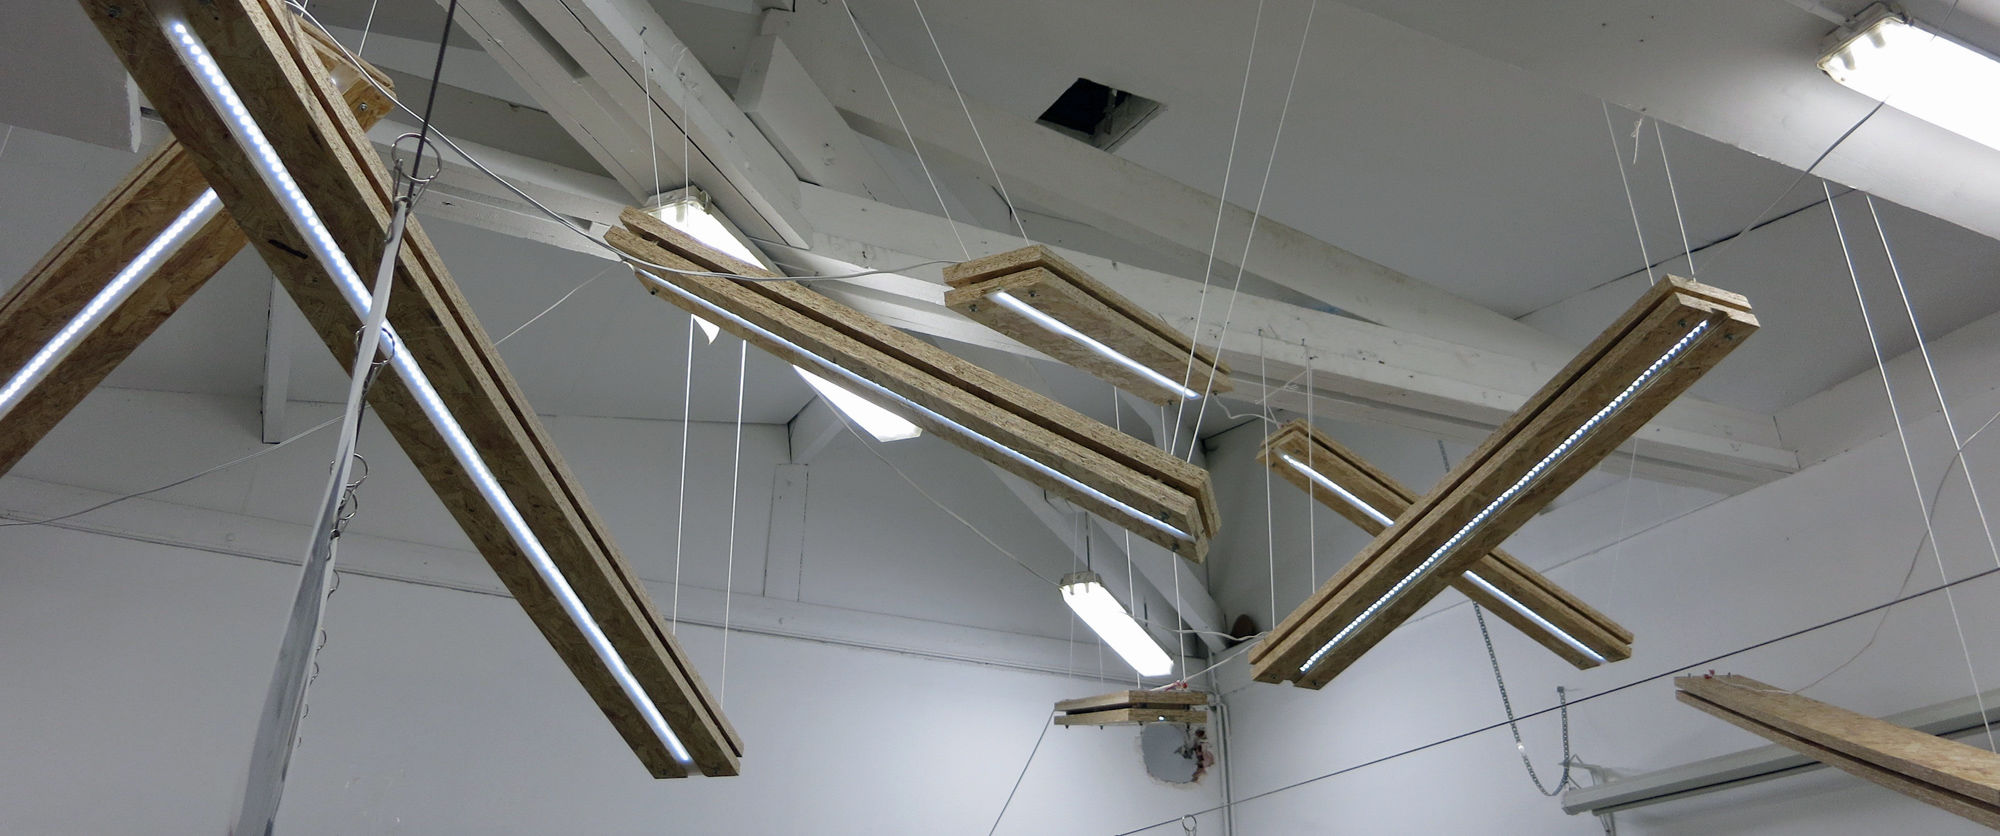 Dans le cadre de l'aménagement d'un workshop situé au sein de l'Ecole d'architecture à Paris (75), Atelier des Cinq Chênes a géré la fabrication d'une série de luminaires en panneaux de lamelles de bois.